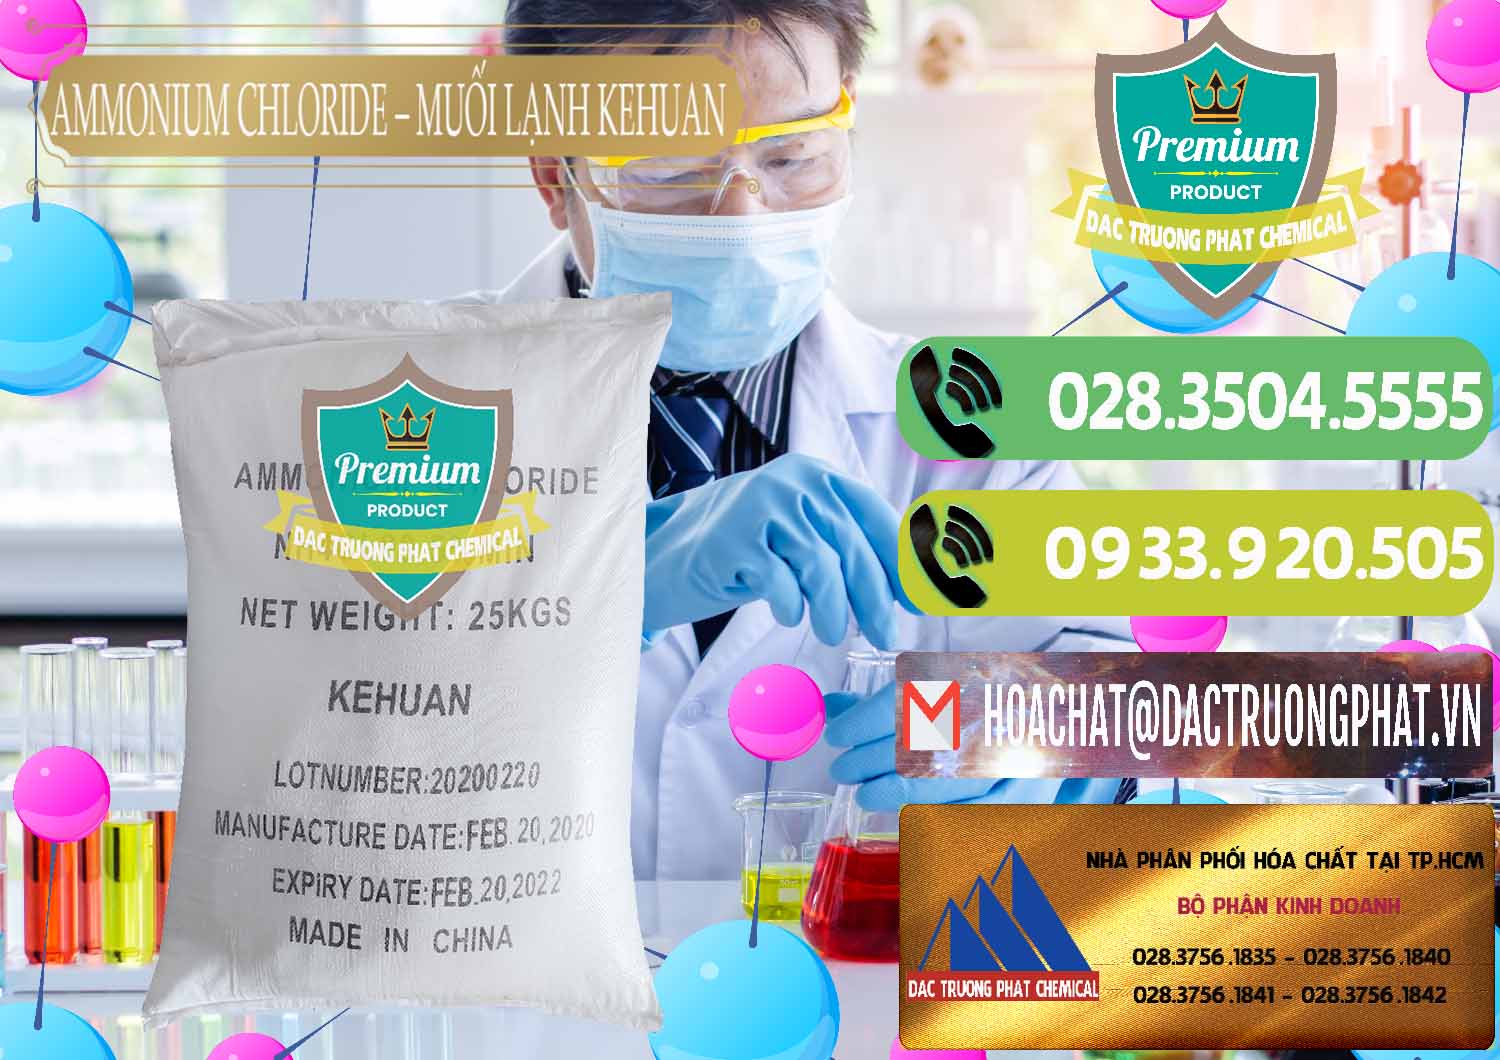 Cty chuyên bán & cung cấp Ammonium Chloride – NH4CL Muối Lạnh Kehuan Trung Quốc China - 0022 - Đơn vị phân phối - cung cấp hóa chất tại TP.HCM - hoachatmientay.vn